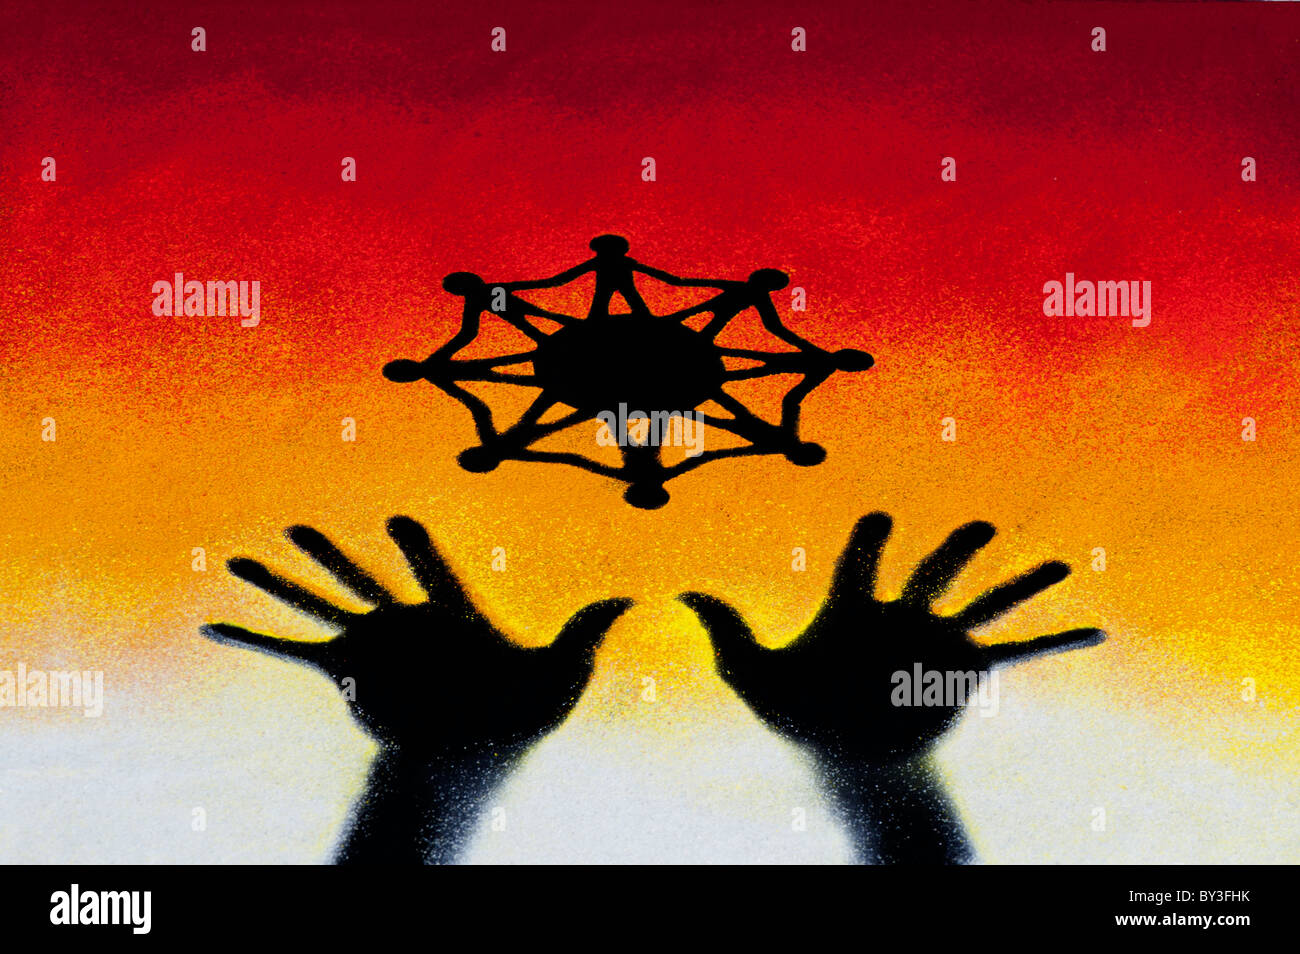 Eine Welt Einheit Symbol über der schwarzen Hand druckt mit bunten Sonnenuntergang farbige Pulver hergestellt. Indien Stockfoto